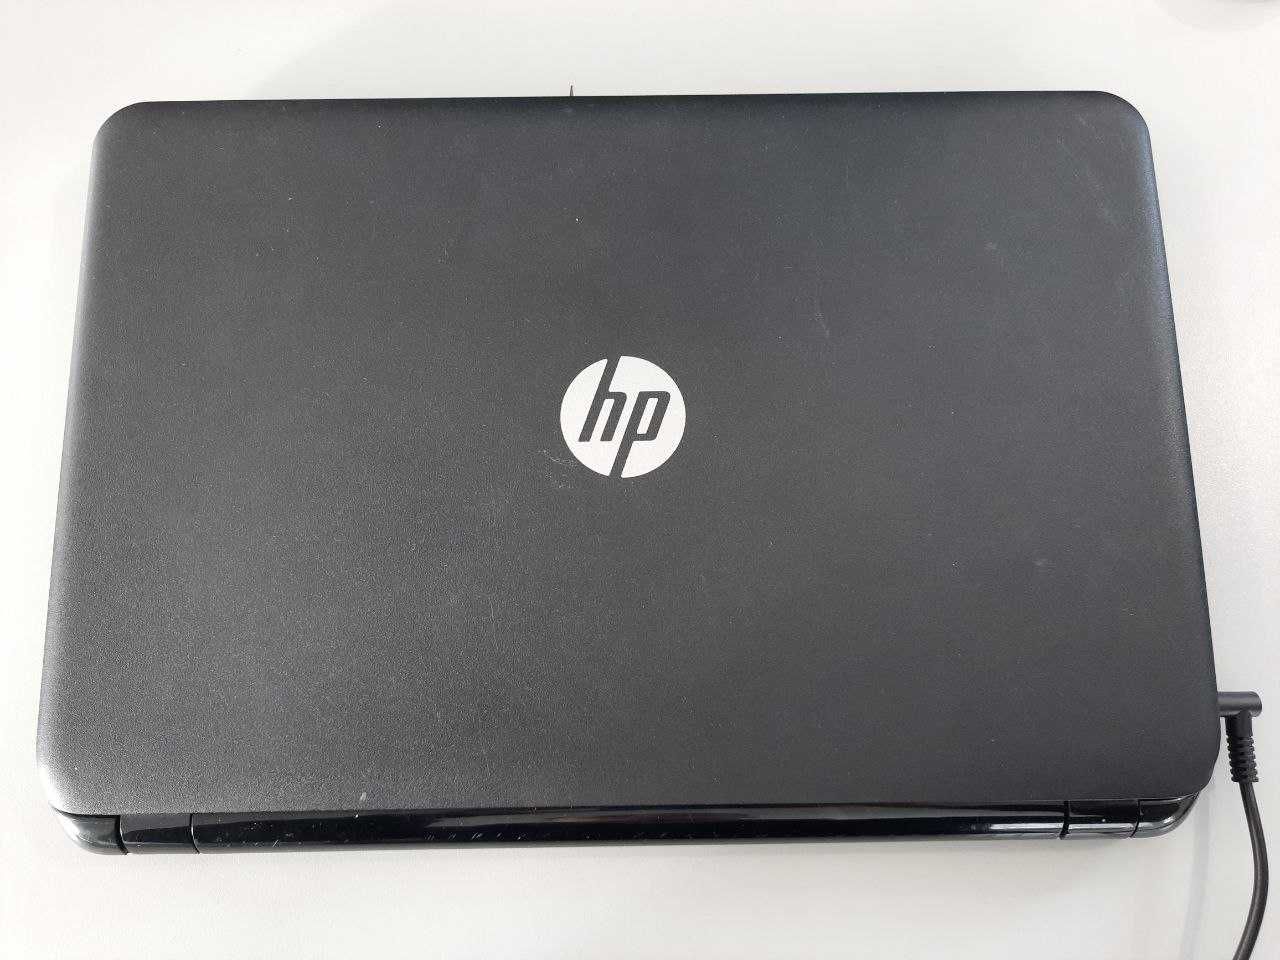 Ноутбук HP 250 G3 Pentium N3540 2.16GHz Хороший стан